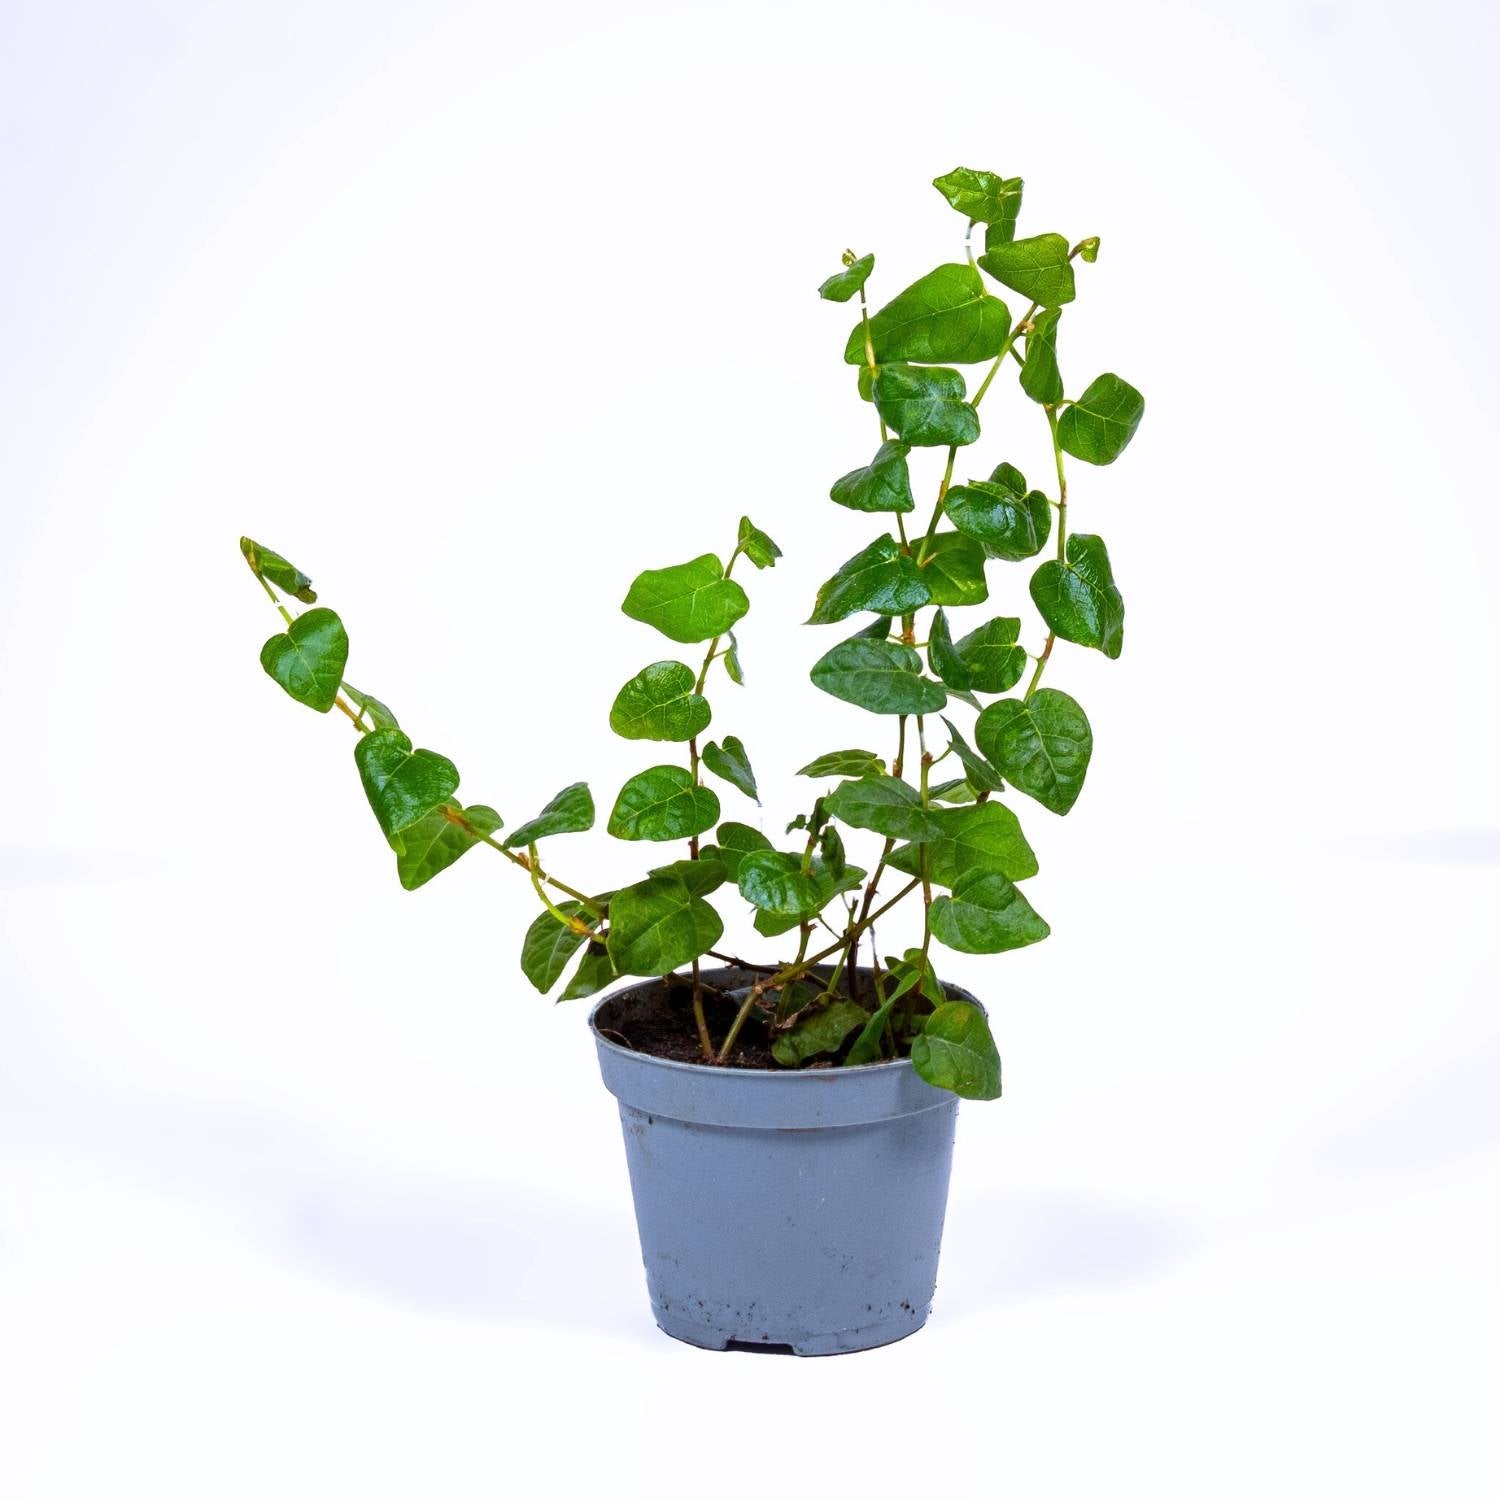 Ficus pumila plant for sale